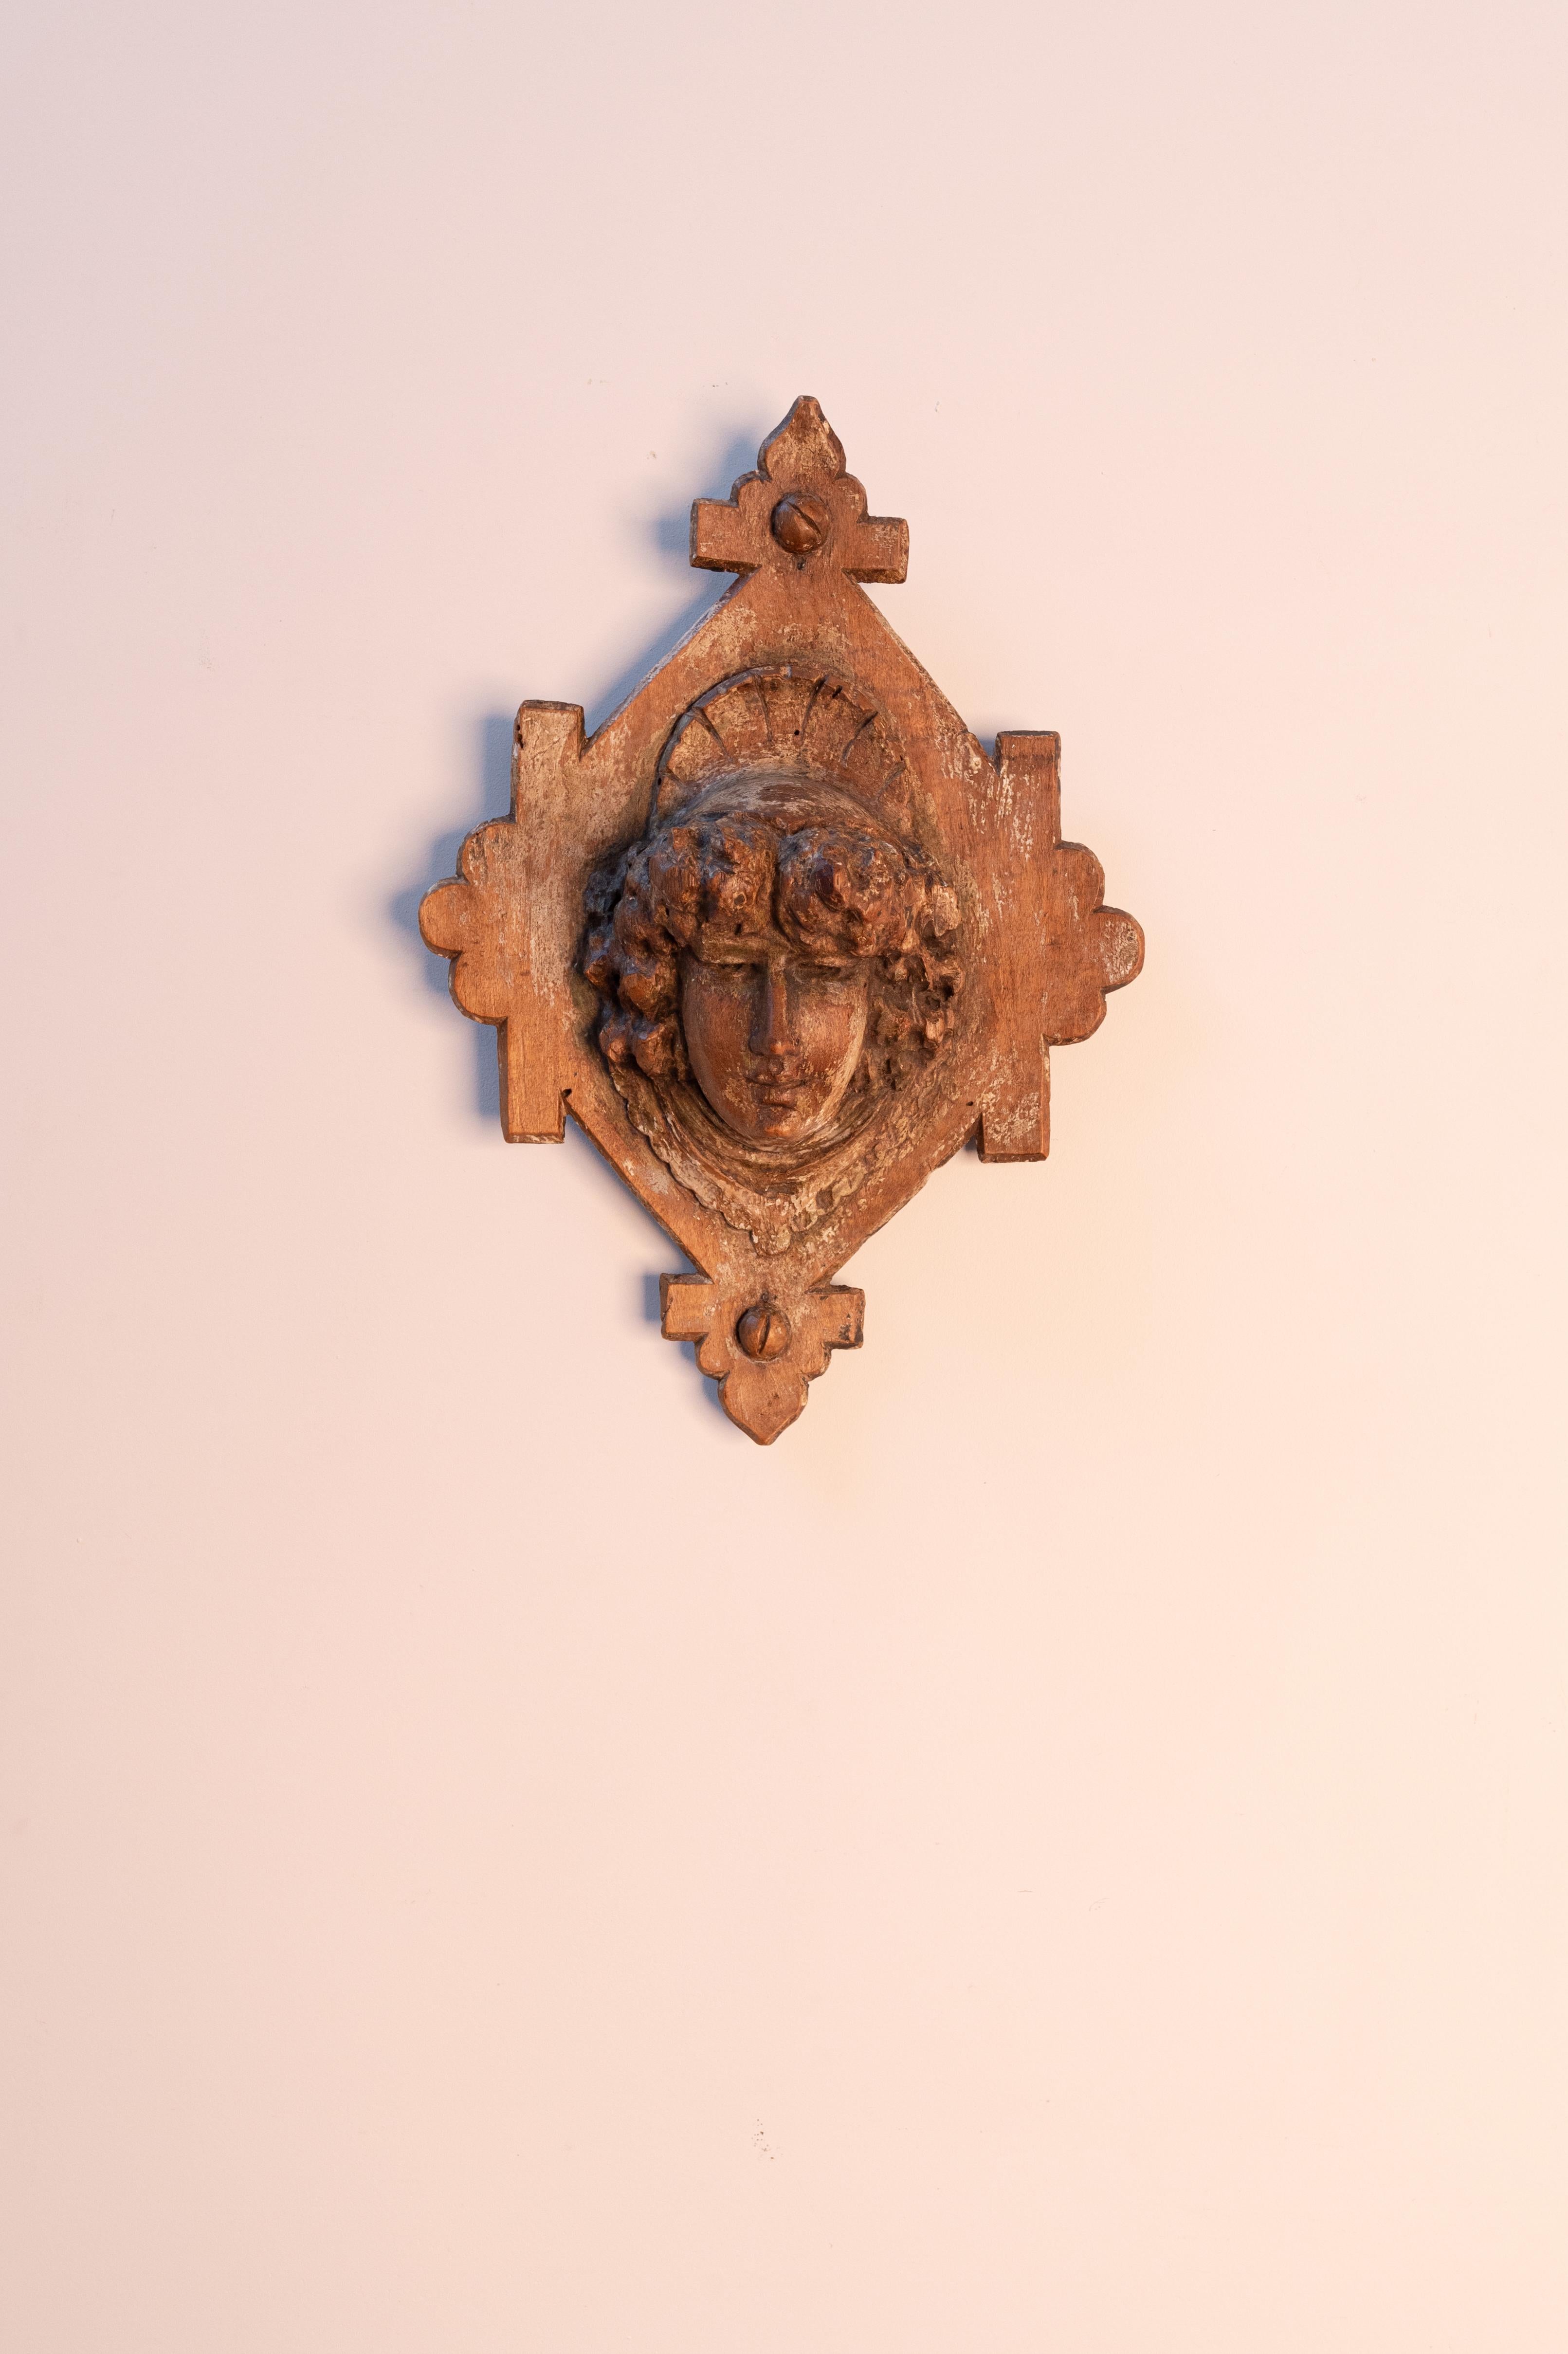 Tête en bois sculptée à la main, datant de la fin du XVIIe siècle ou du début du XVIIIe siècle, provenant d'Europe du Sud. Fabriqué en bois de peuplier. Usure conforme à l'âge et à l'utilisation. 